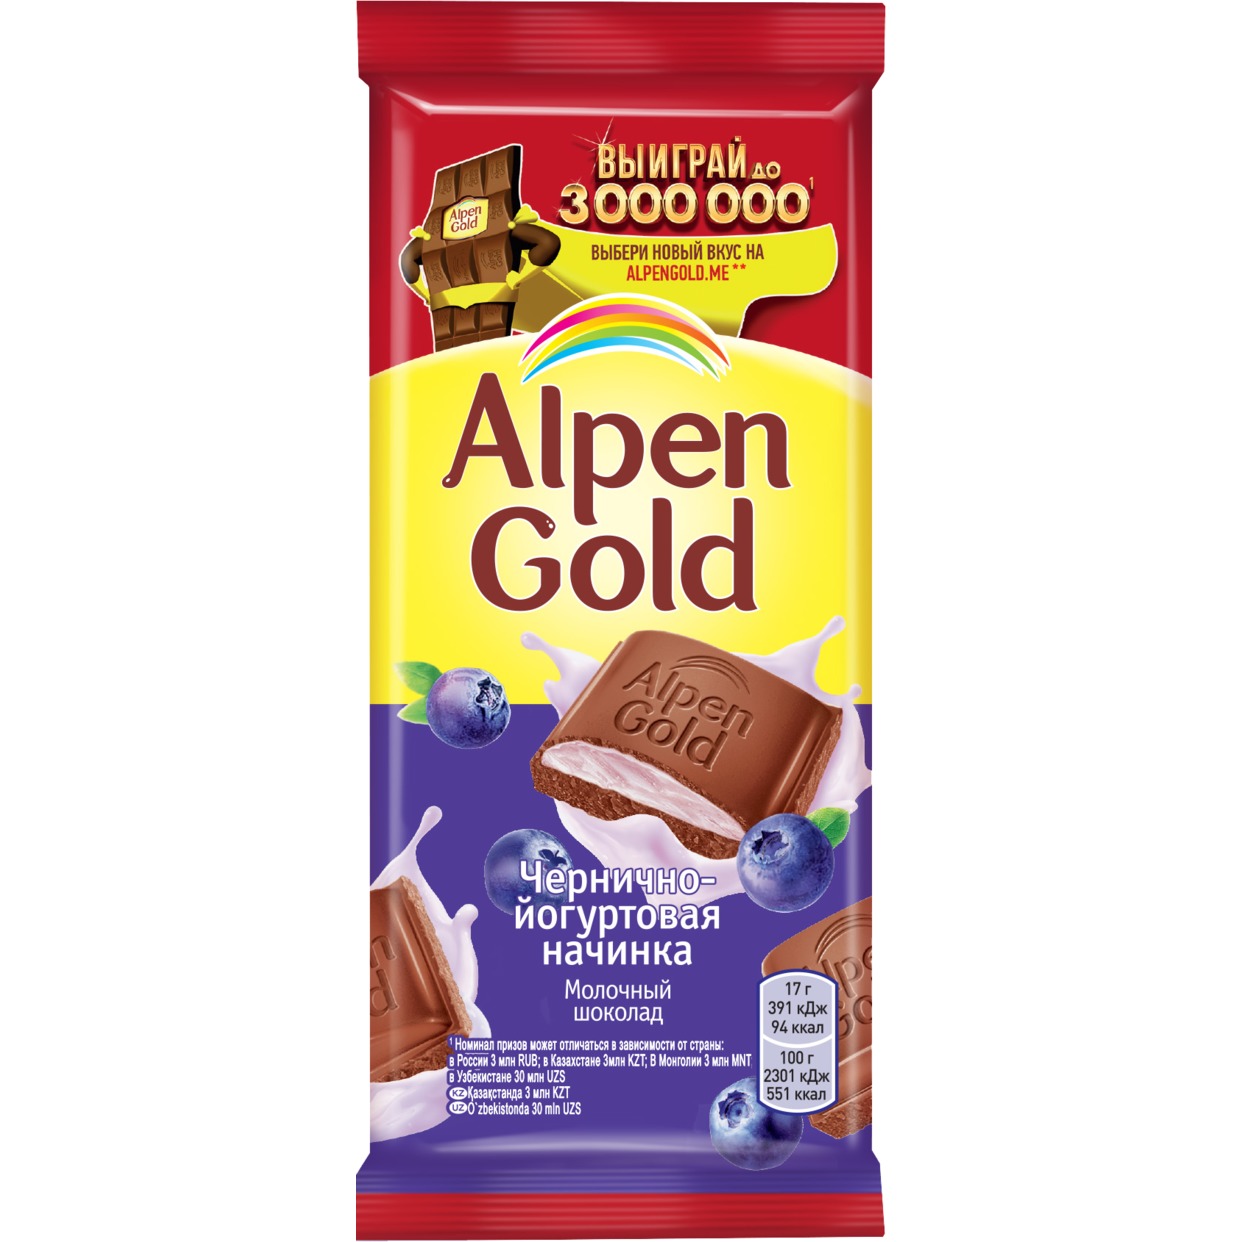 Шоколад молочный Alpen Gold Альпен Гольд с чернично-йогуртовой начинкой, 85г